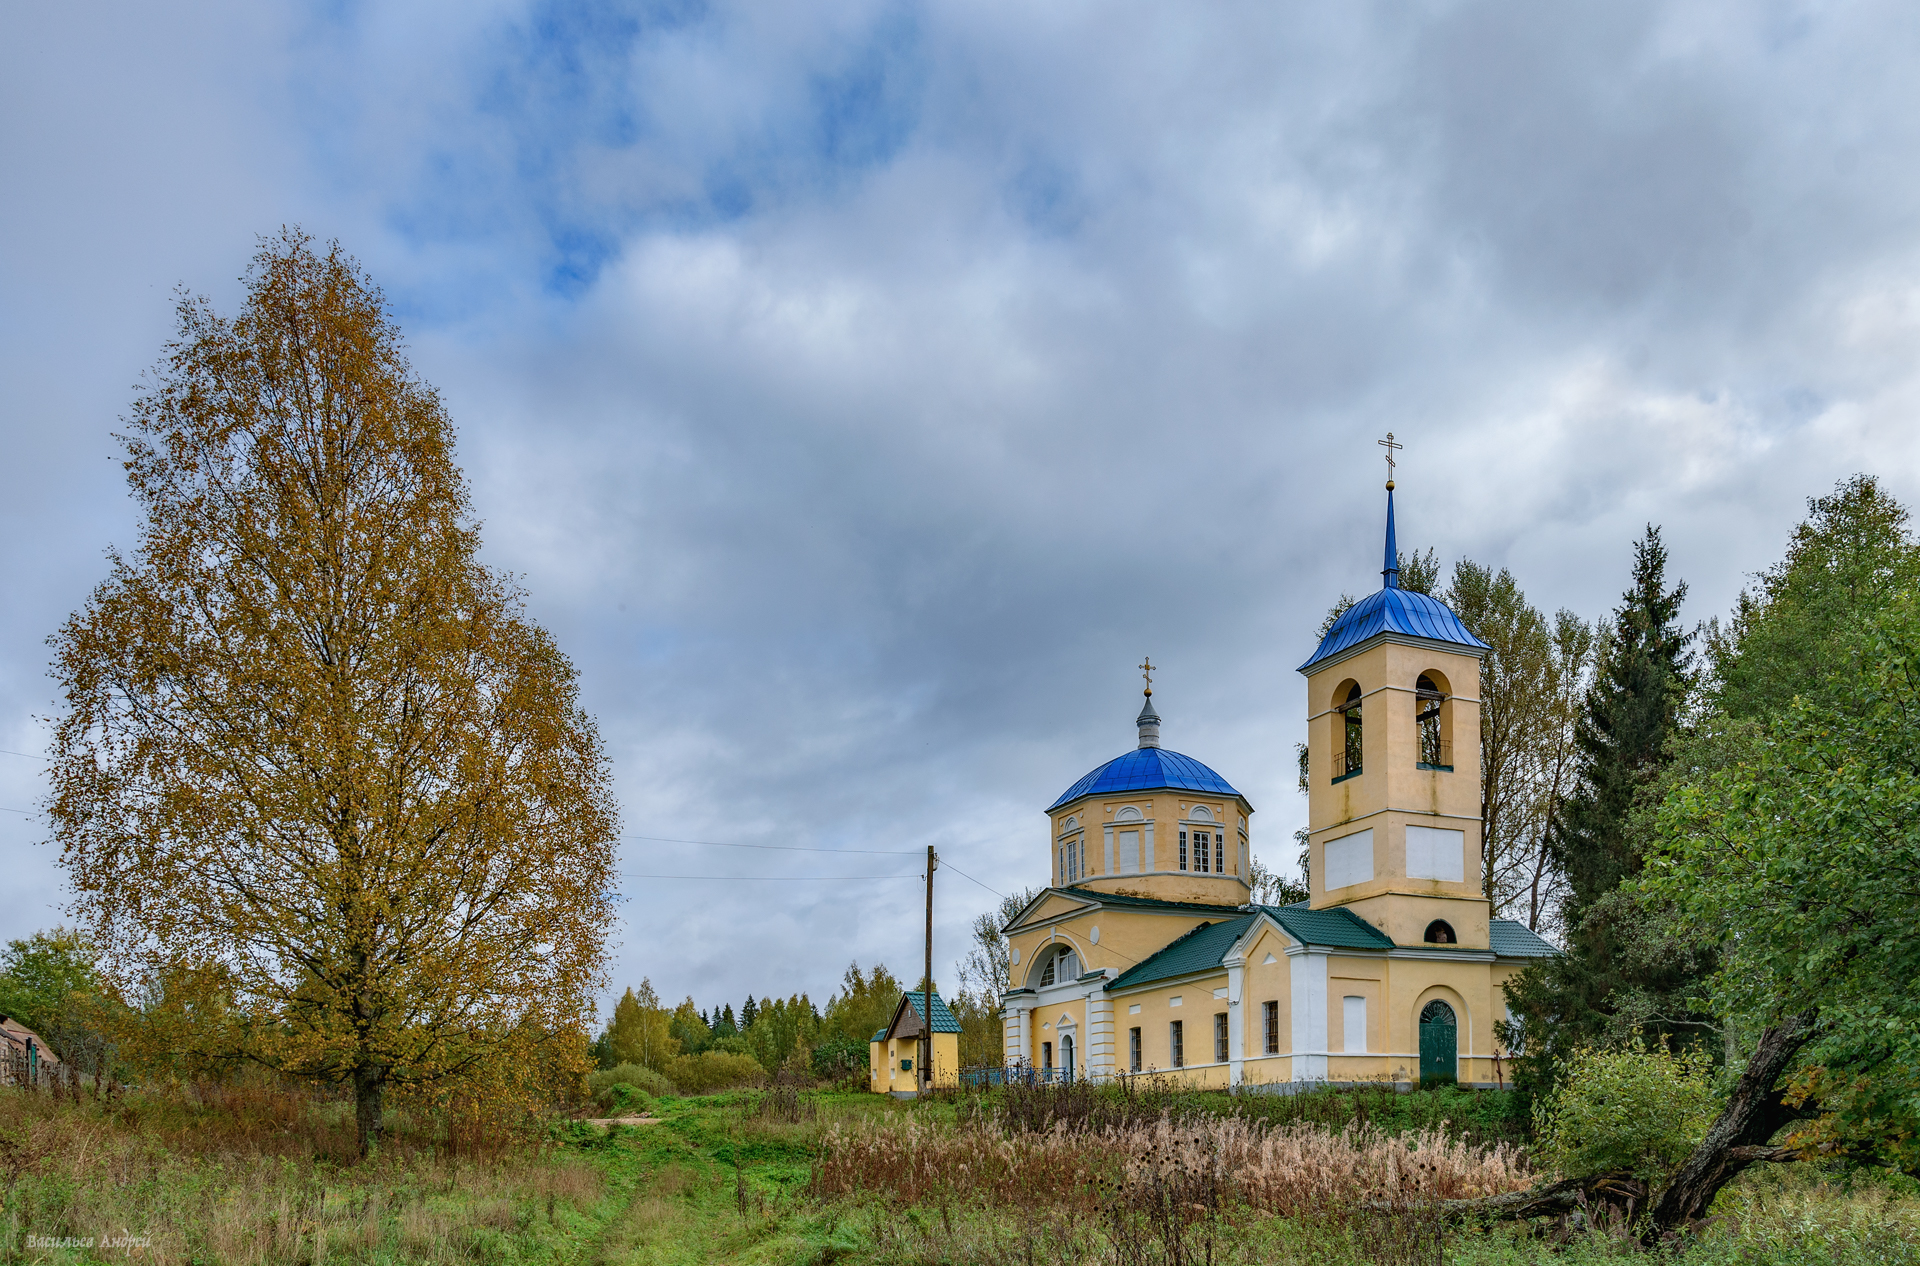 озеряево, тверская область, осень, архитектура, Vasilyev Andrey